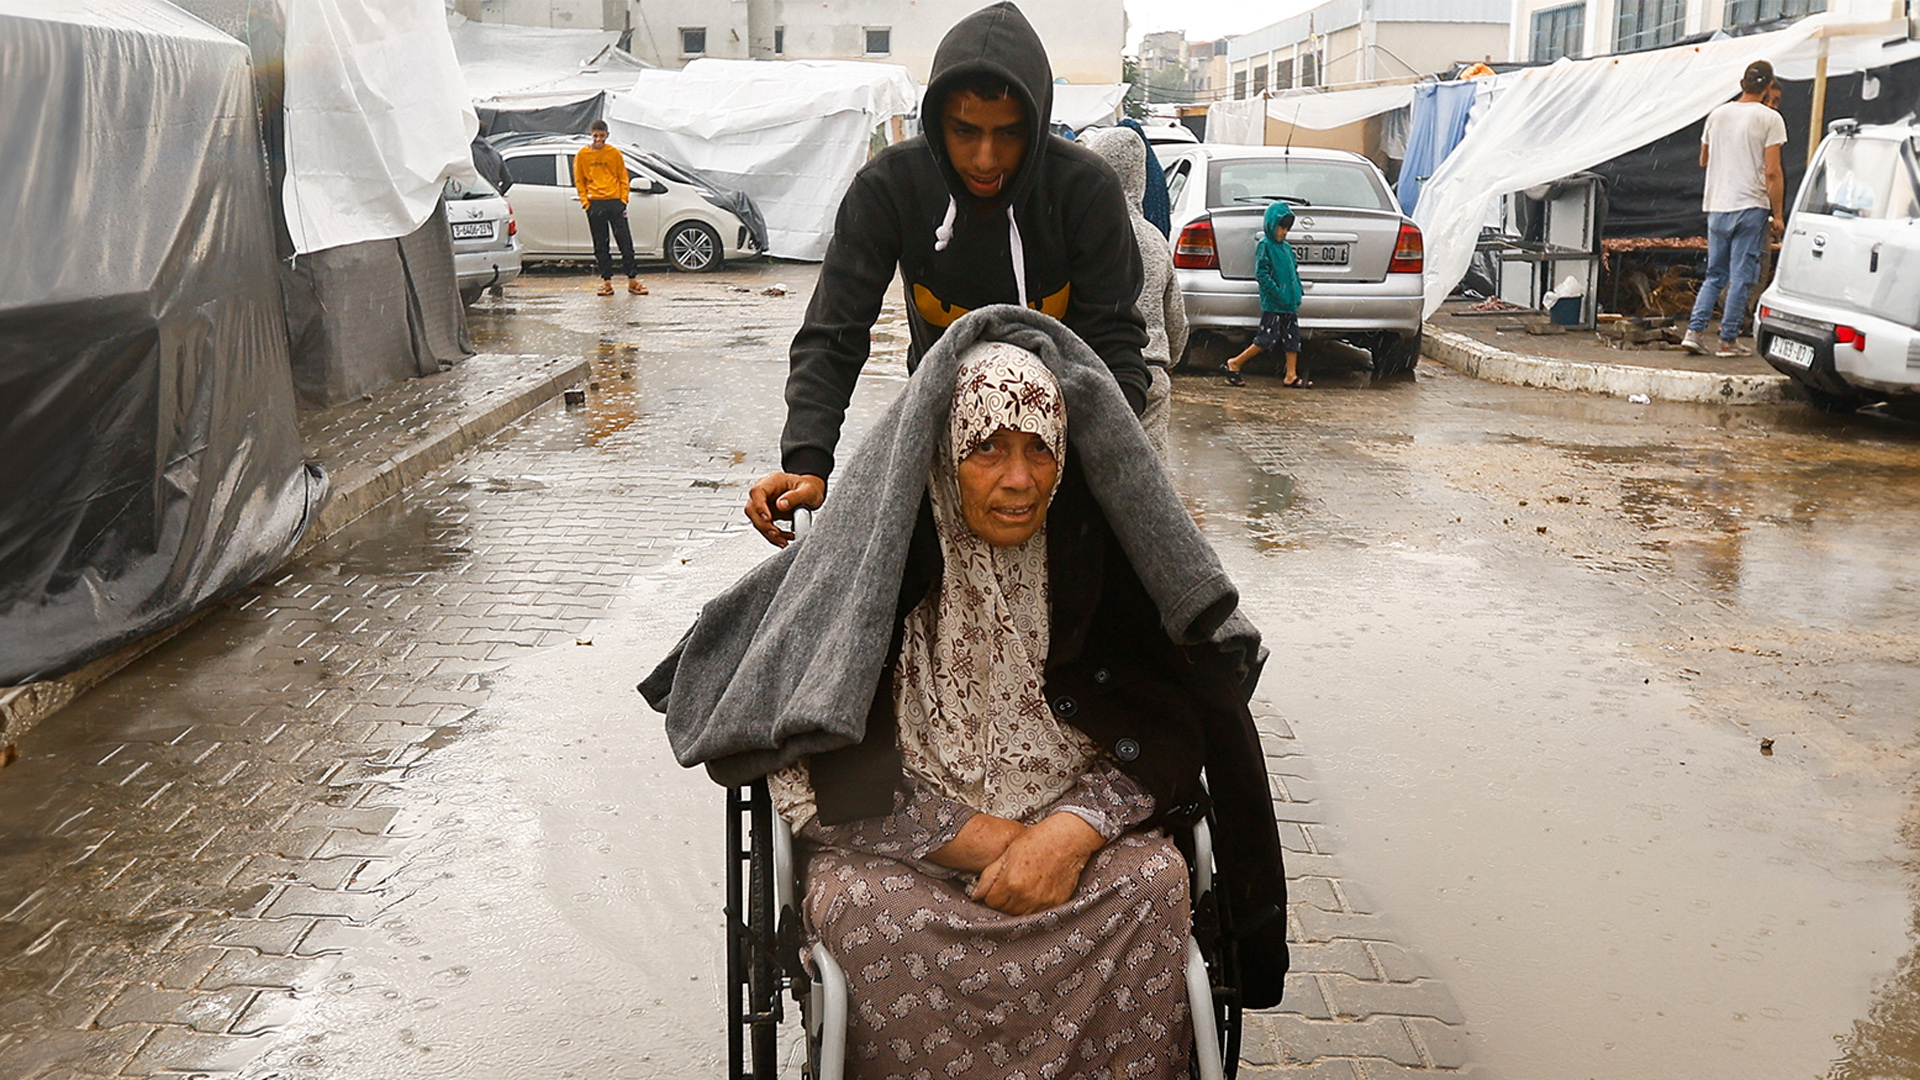 مواطنون من غزة: الأمطار نعمة ولكننا نعيش في خيام اللجوء والتشرد والمعاناة | أخبار – البوكس نيوز